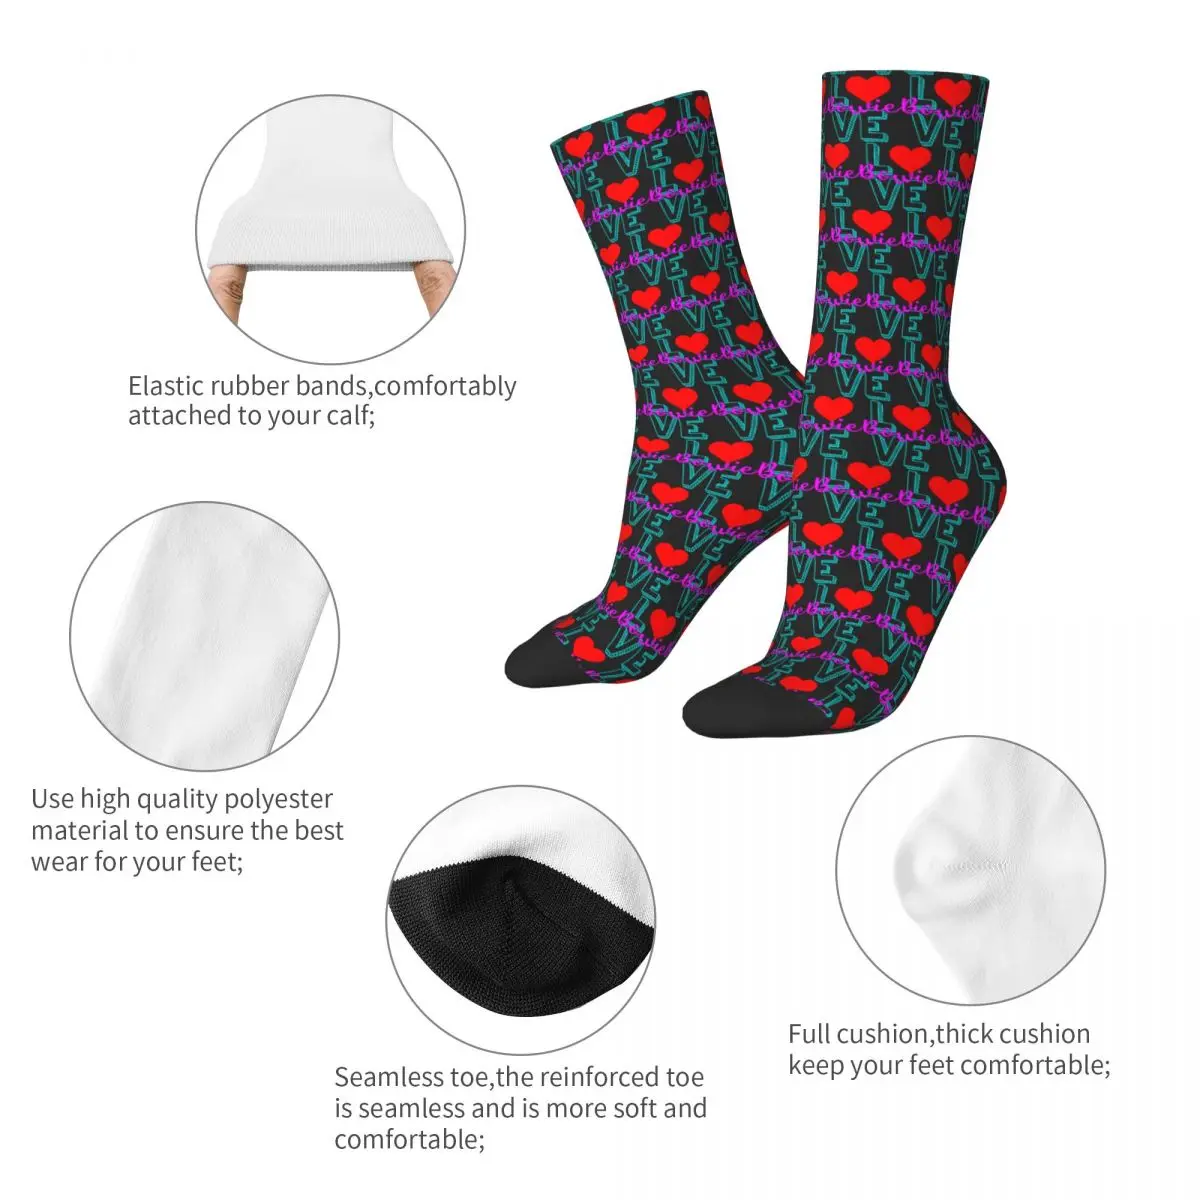 Ластични чорапи Bowie Bowieic (2) R198 с графичен дизайн, най-ДОБРЕ КУПИ ластични чорапи на Онази в контрастен цвят2